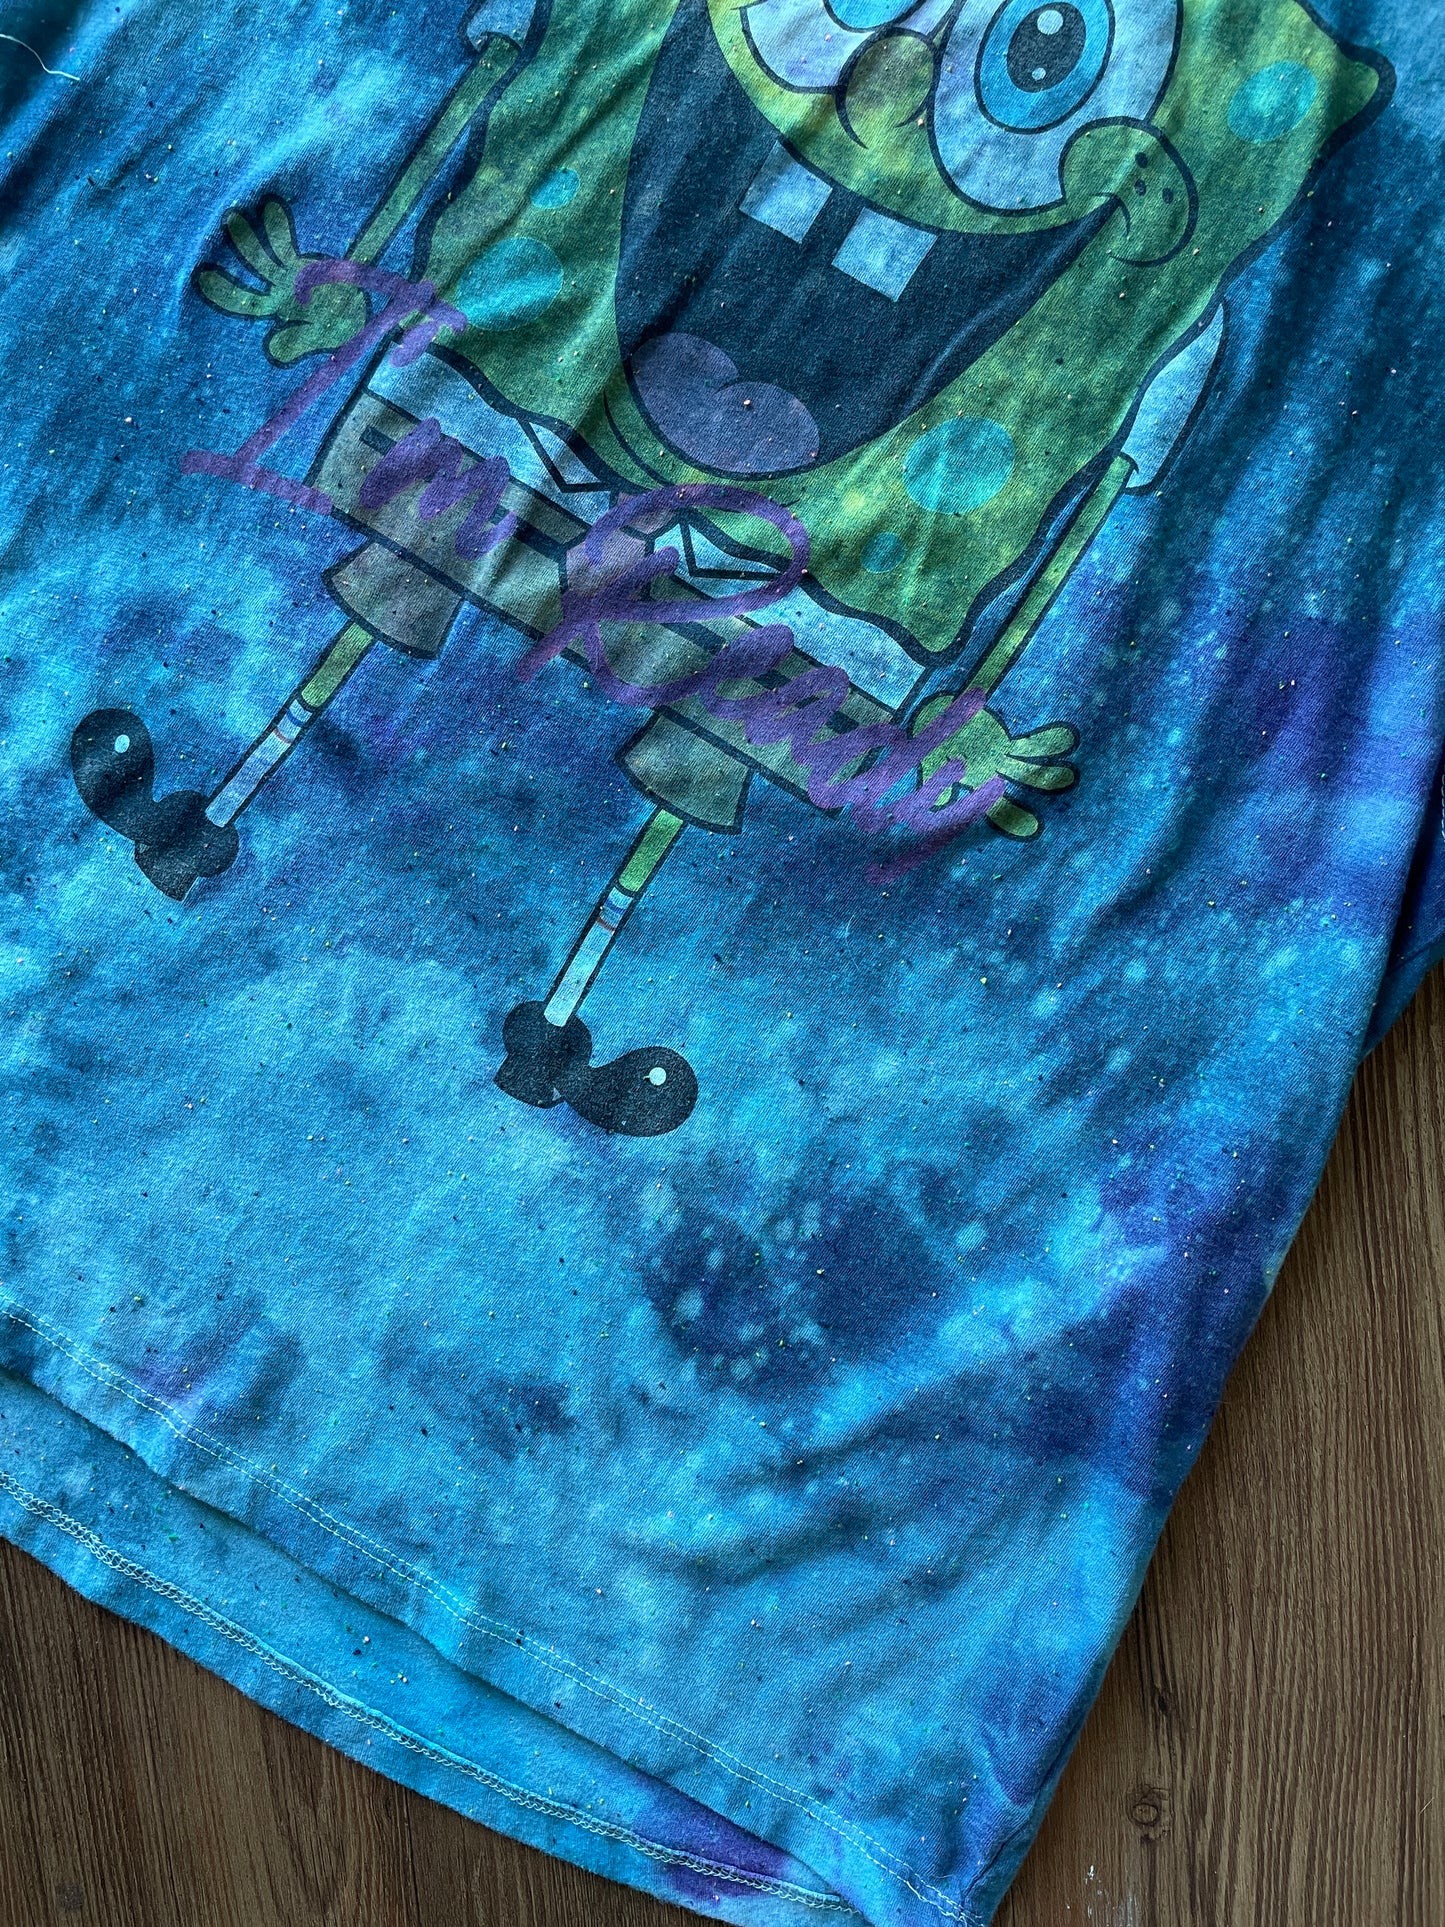 XL Women’s SpongeBob I’m Ready Handmade Tie Dye Tank Too | Blue Ocean Galaxy Tie Dye Sleeveless Top